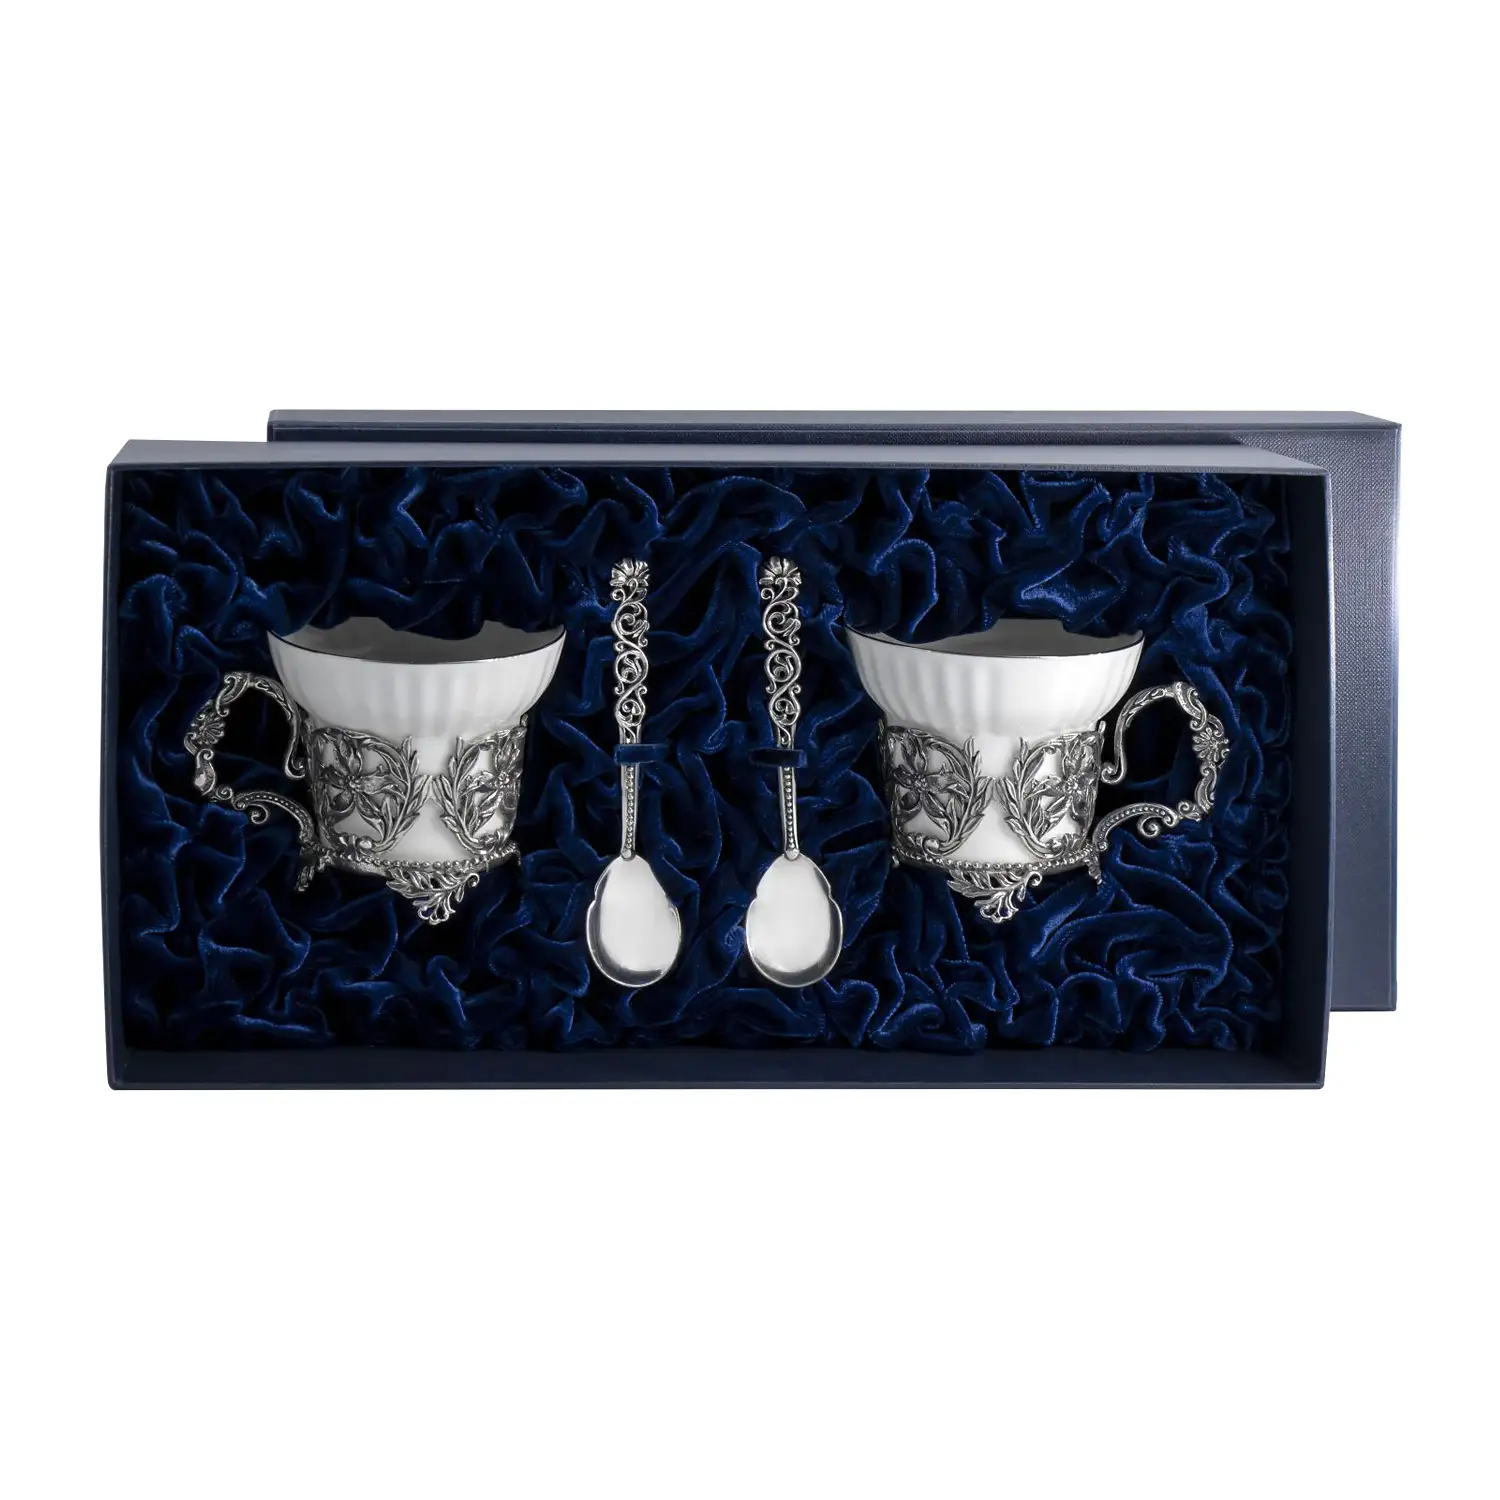 Набор чайных чашек Симфония: ложка, чашка (Серебро 925) набор чайных чашек витая ложка чашка серебро 925